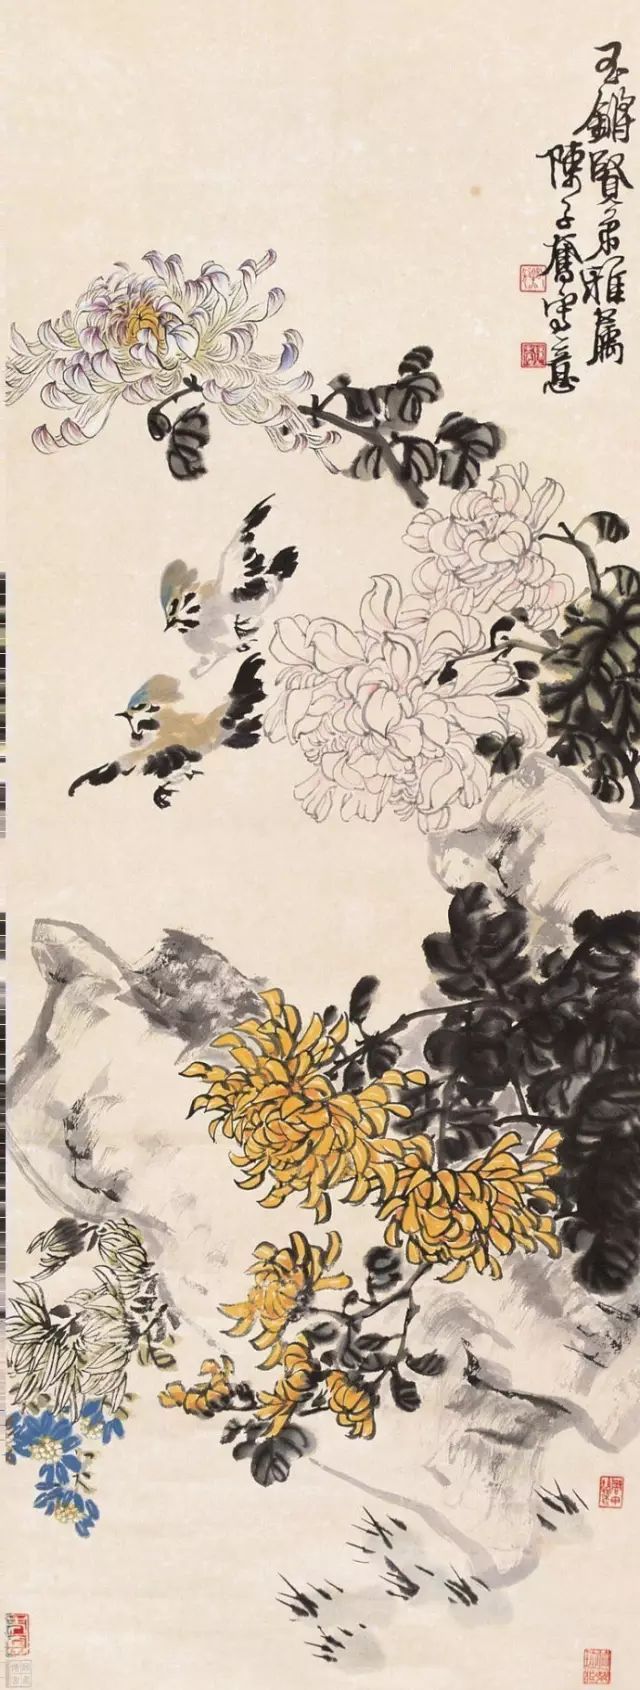 ▲陈子奋(1898～19766)《菊石小鸟》